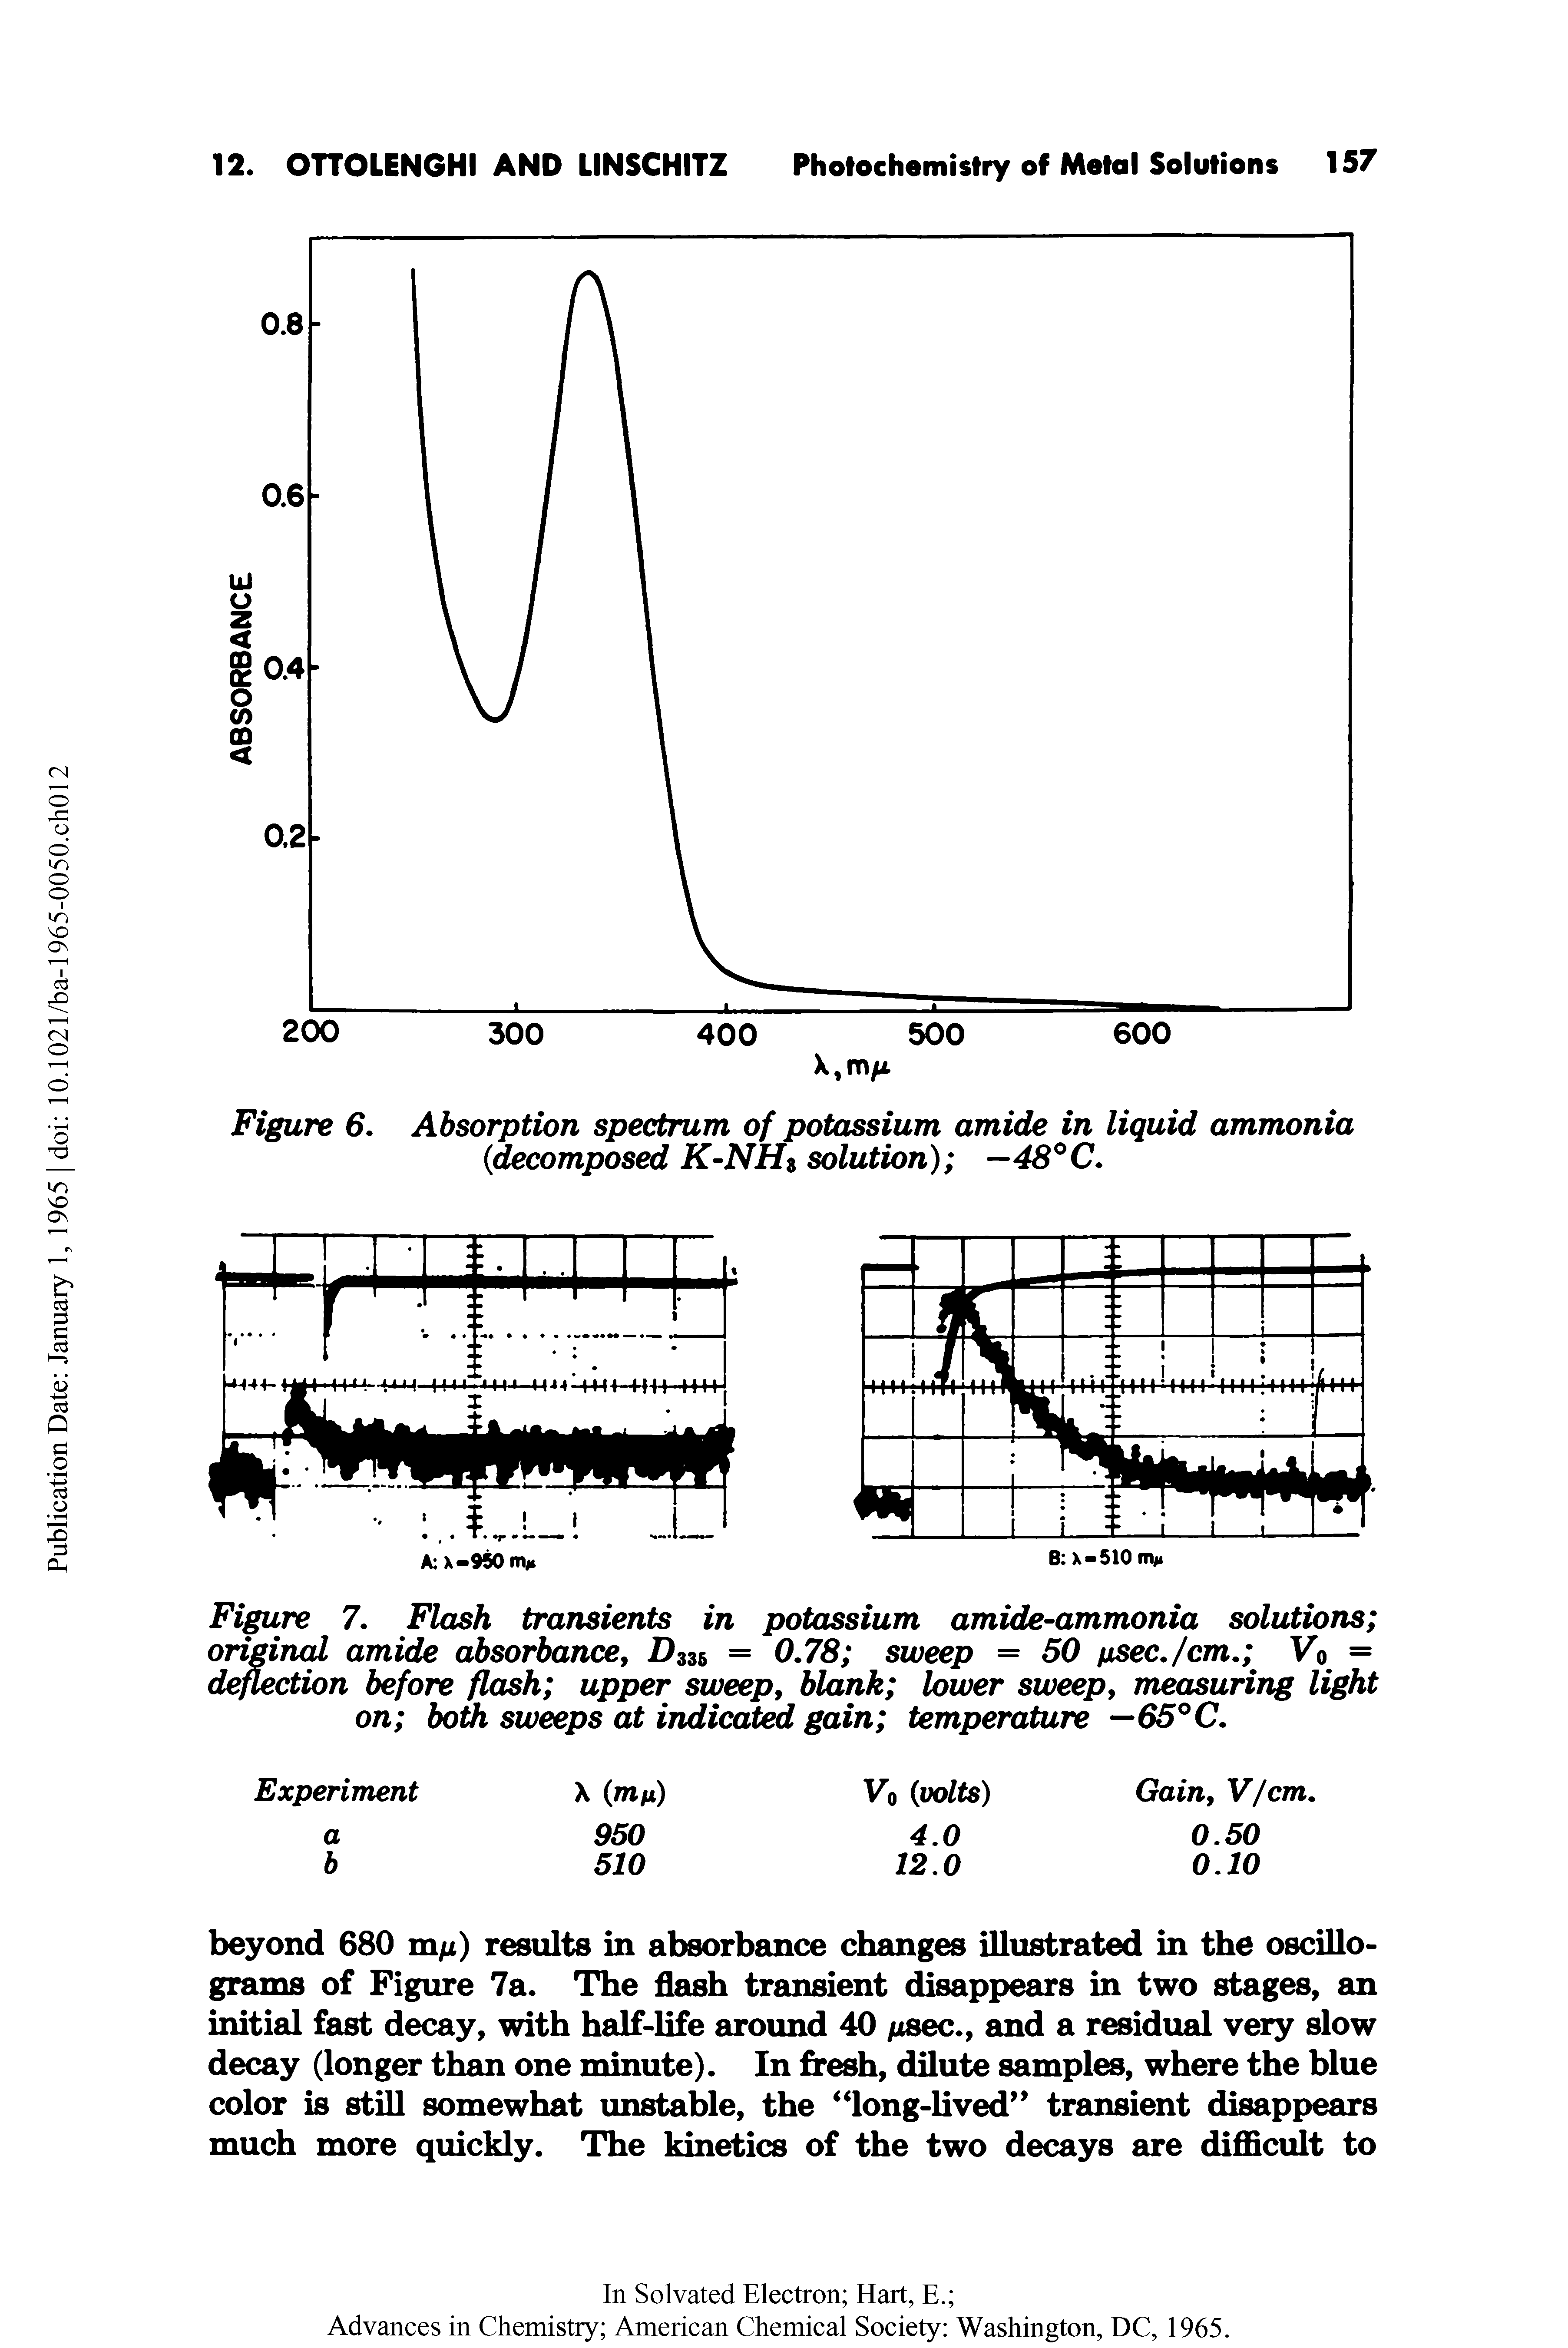 Figure 6. Absorption spectrum of potassium amide in liquid ammonia (<decomposed K-NH3 solution) —48°C.